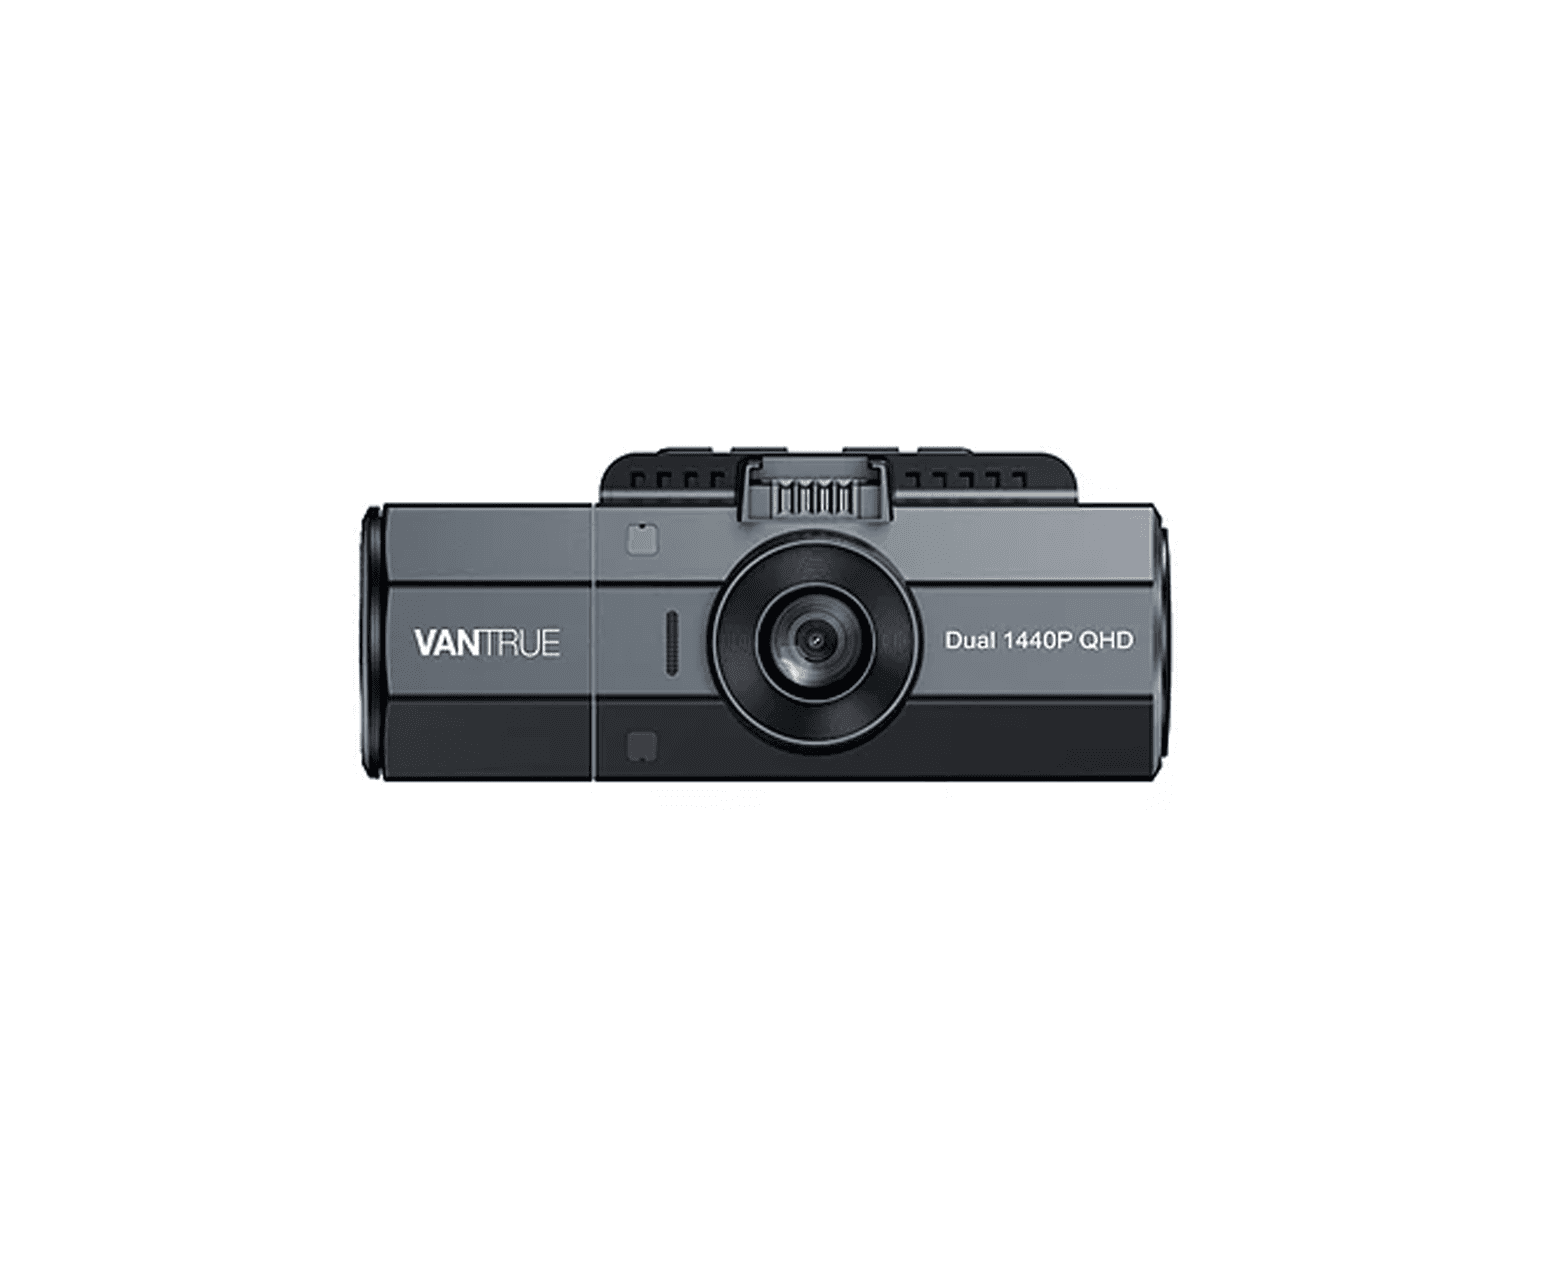 Vantrue N2S Dual 1440p Dash Cam avec GPS